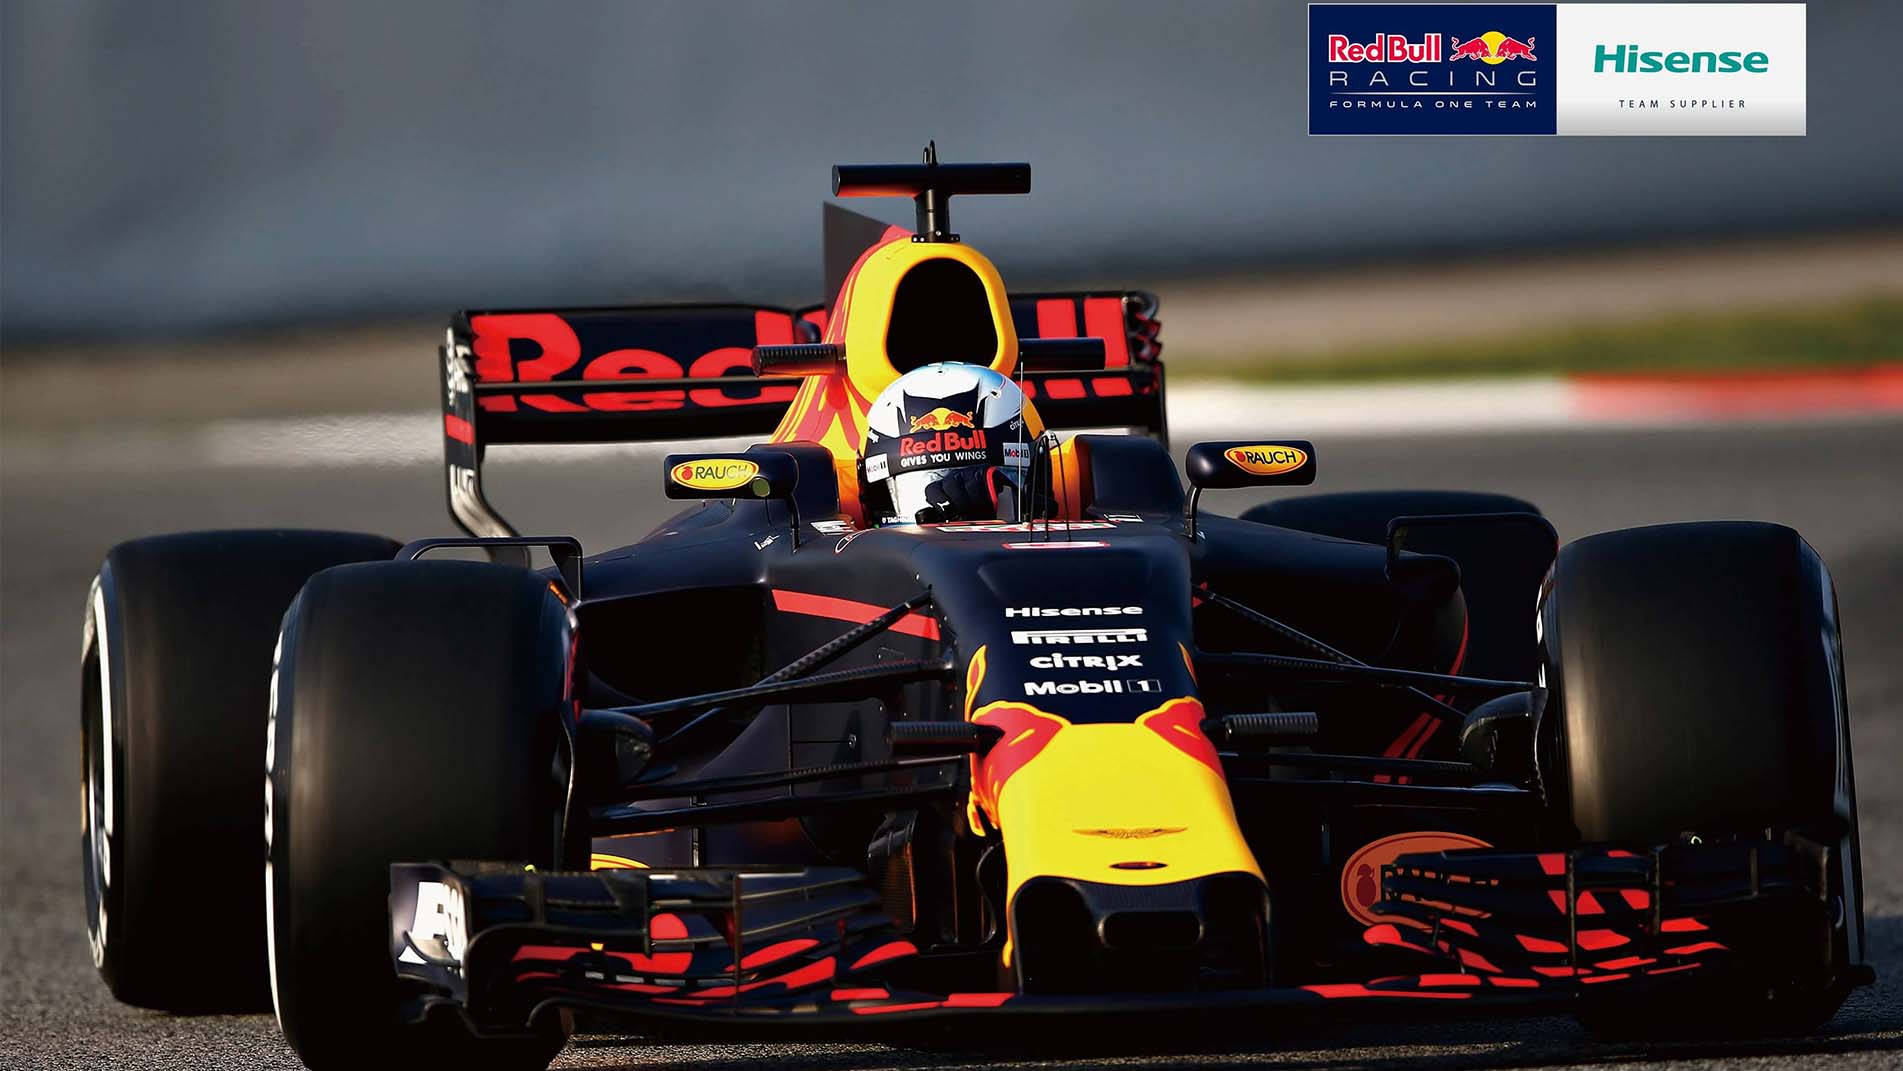 Red Bull Racing Hisense Sponsorship Wallpaper